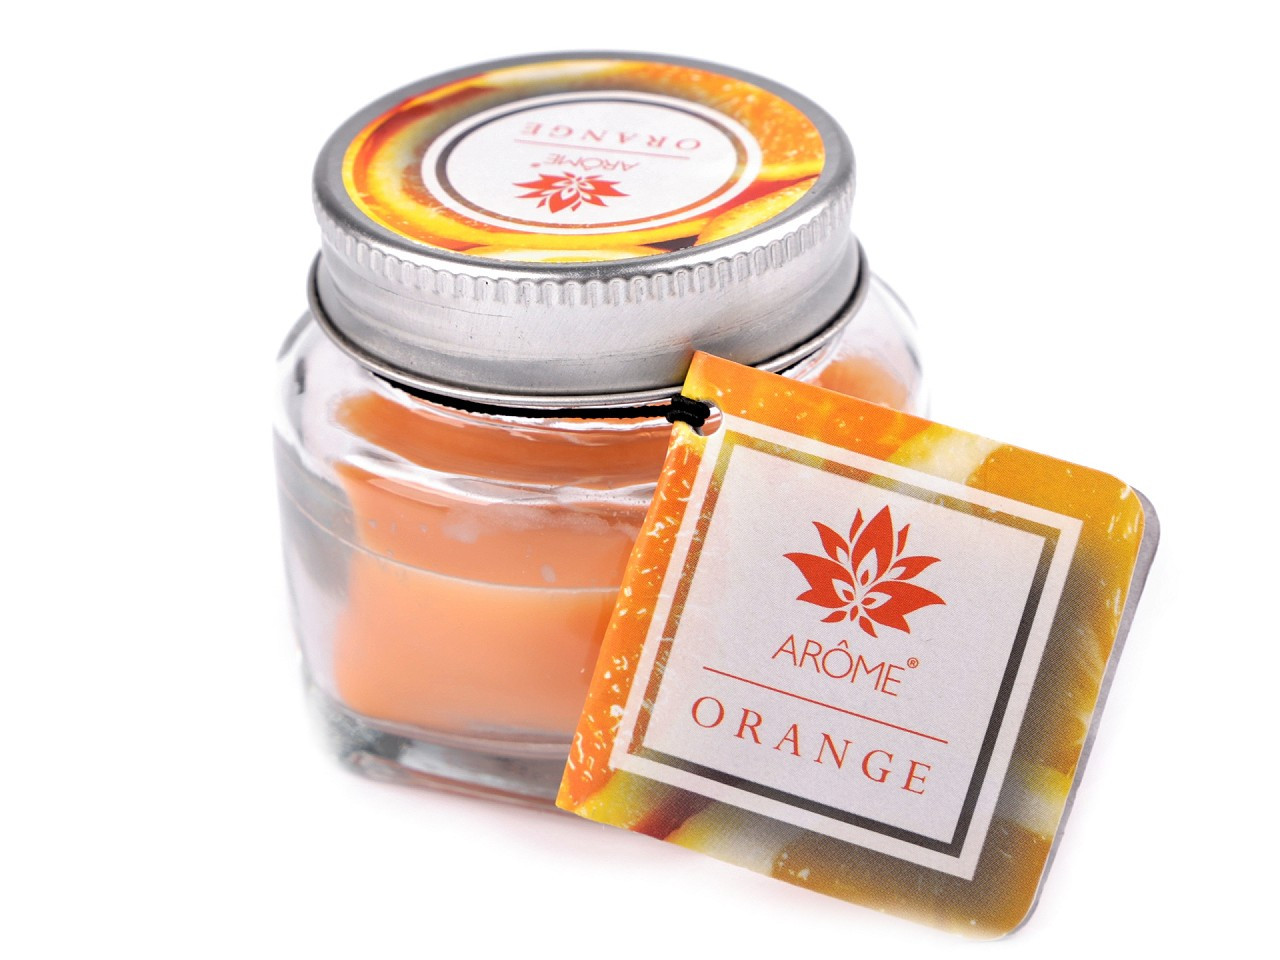 Malá vonná svíčka ve skle s jmenovkou 28 g, barva 14 (Orange) oranžová výrazná